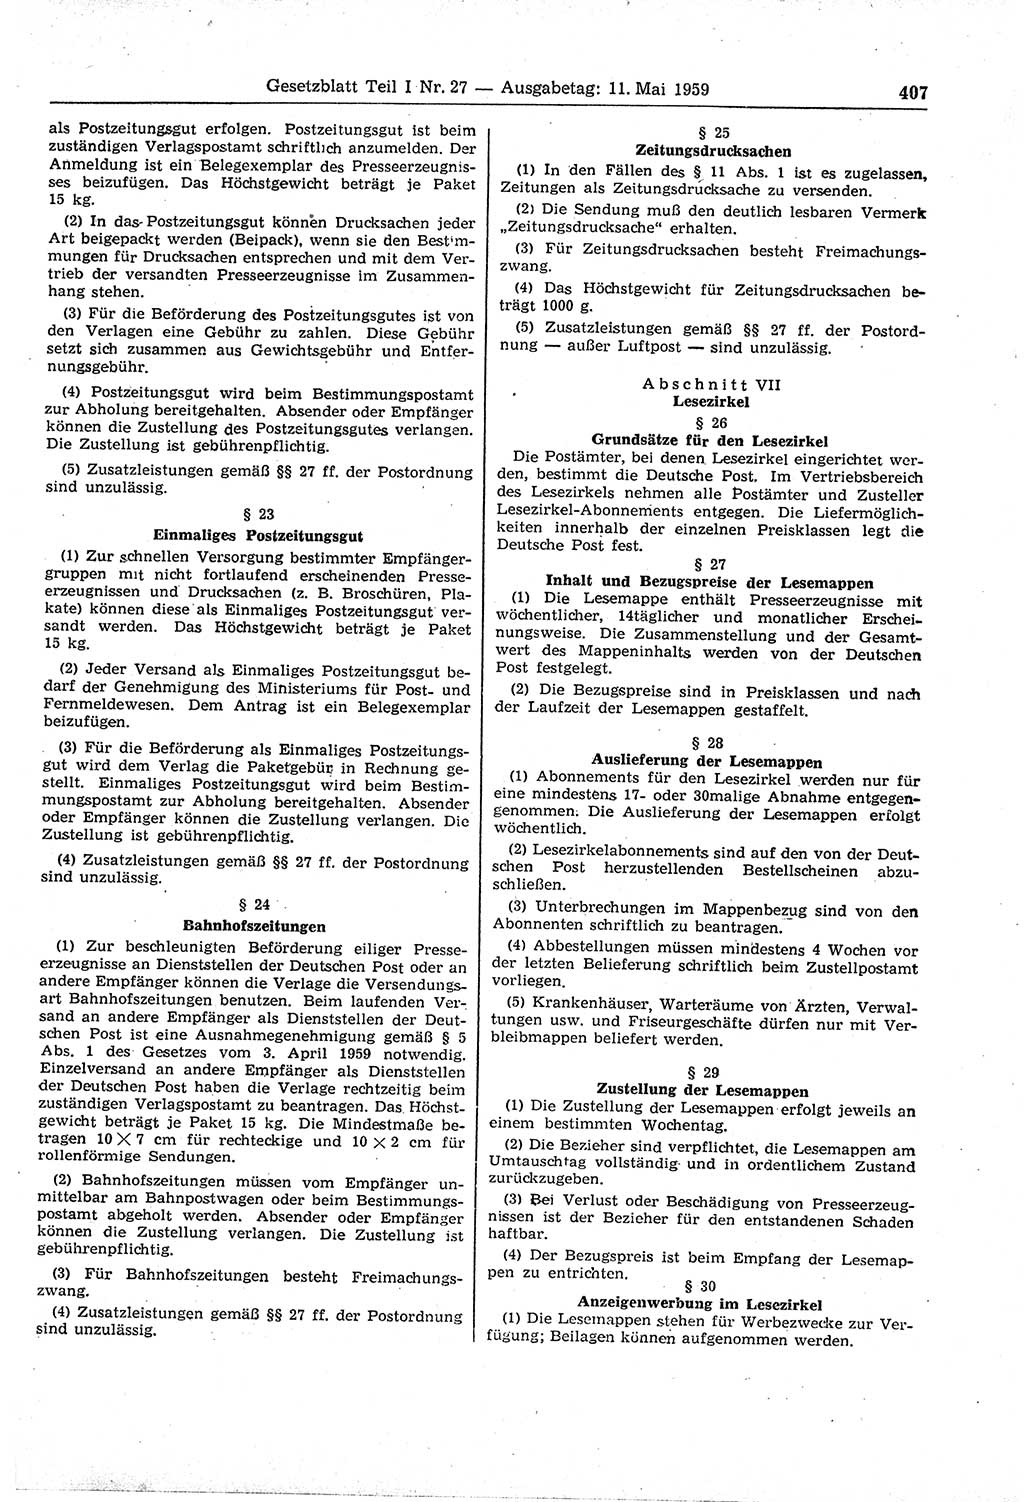 Gesetzblatt (GBl.) der Deutschen Demokratischen Republik (DDR) Teil Ⅰ 1959, Seite 407 (GBl. DDR Ⅰ 1959, S. 407)